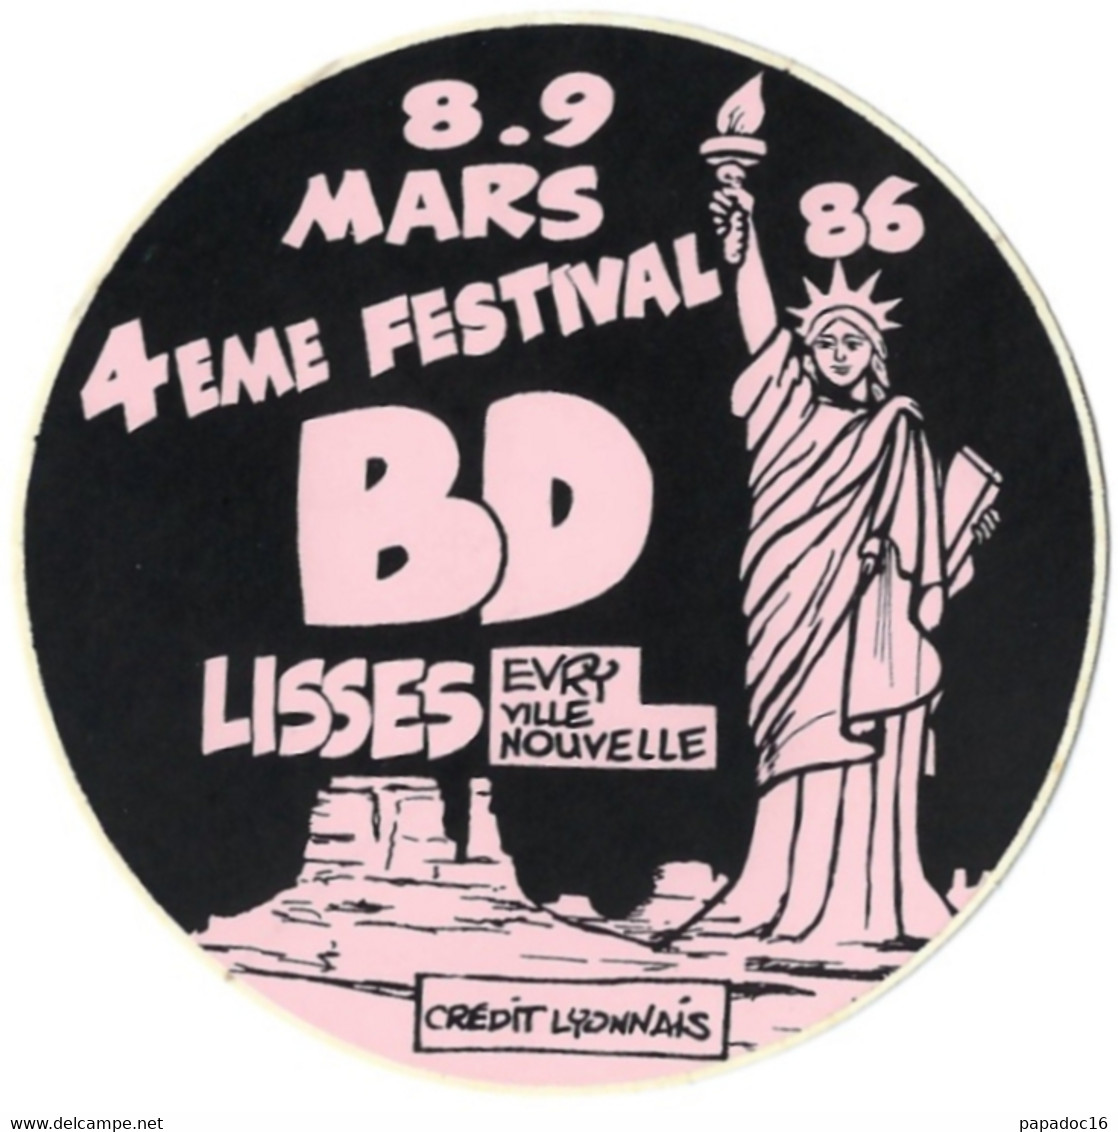 BD - Autocollant - 4eme Festival BD - Lisses - Evry Ville Nouvelle - 8-9 Mars 1986 [Crédit Lyonnais] - Adesivi